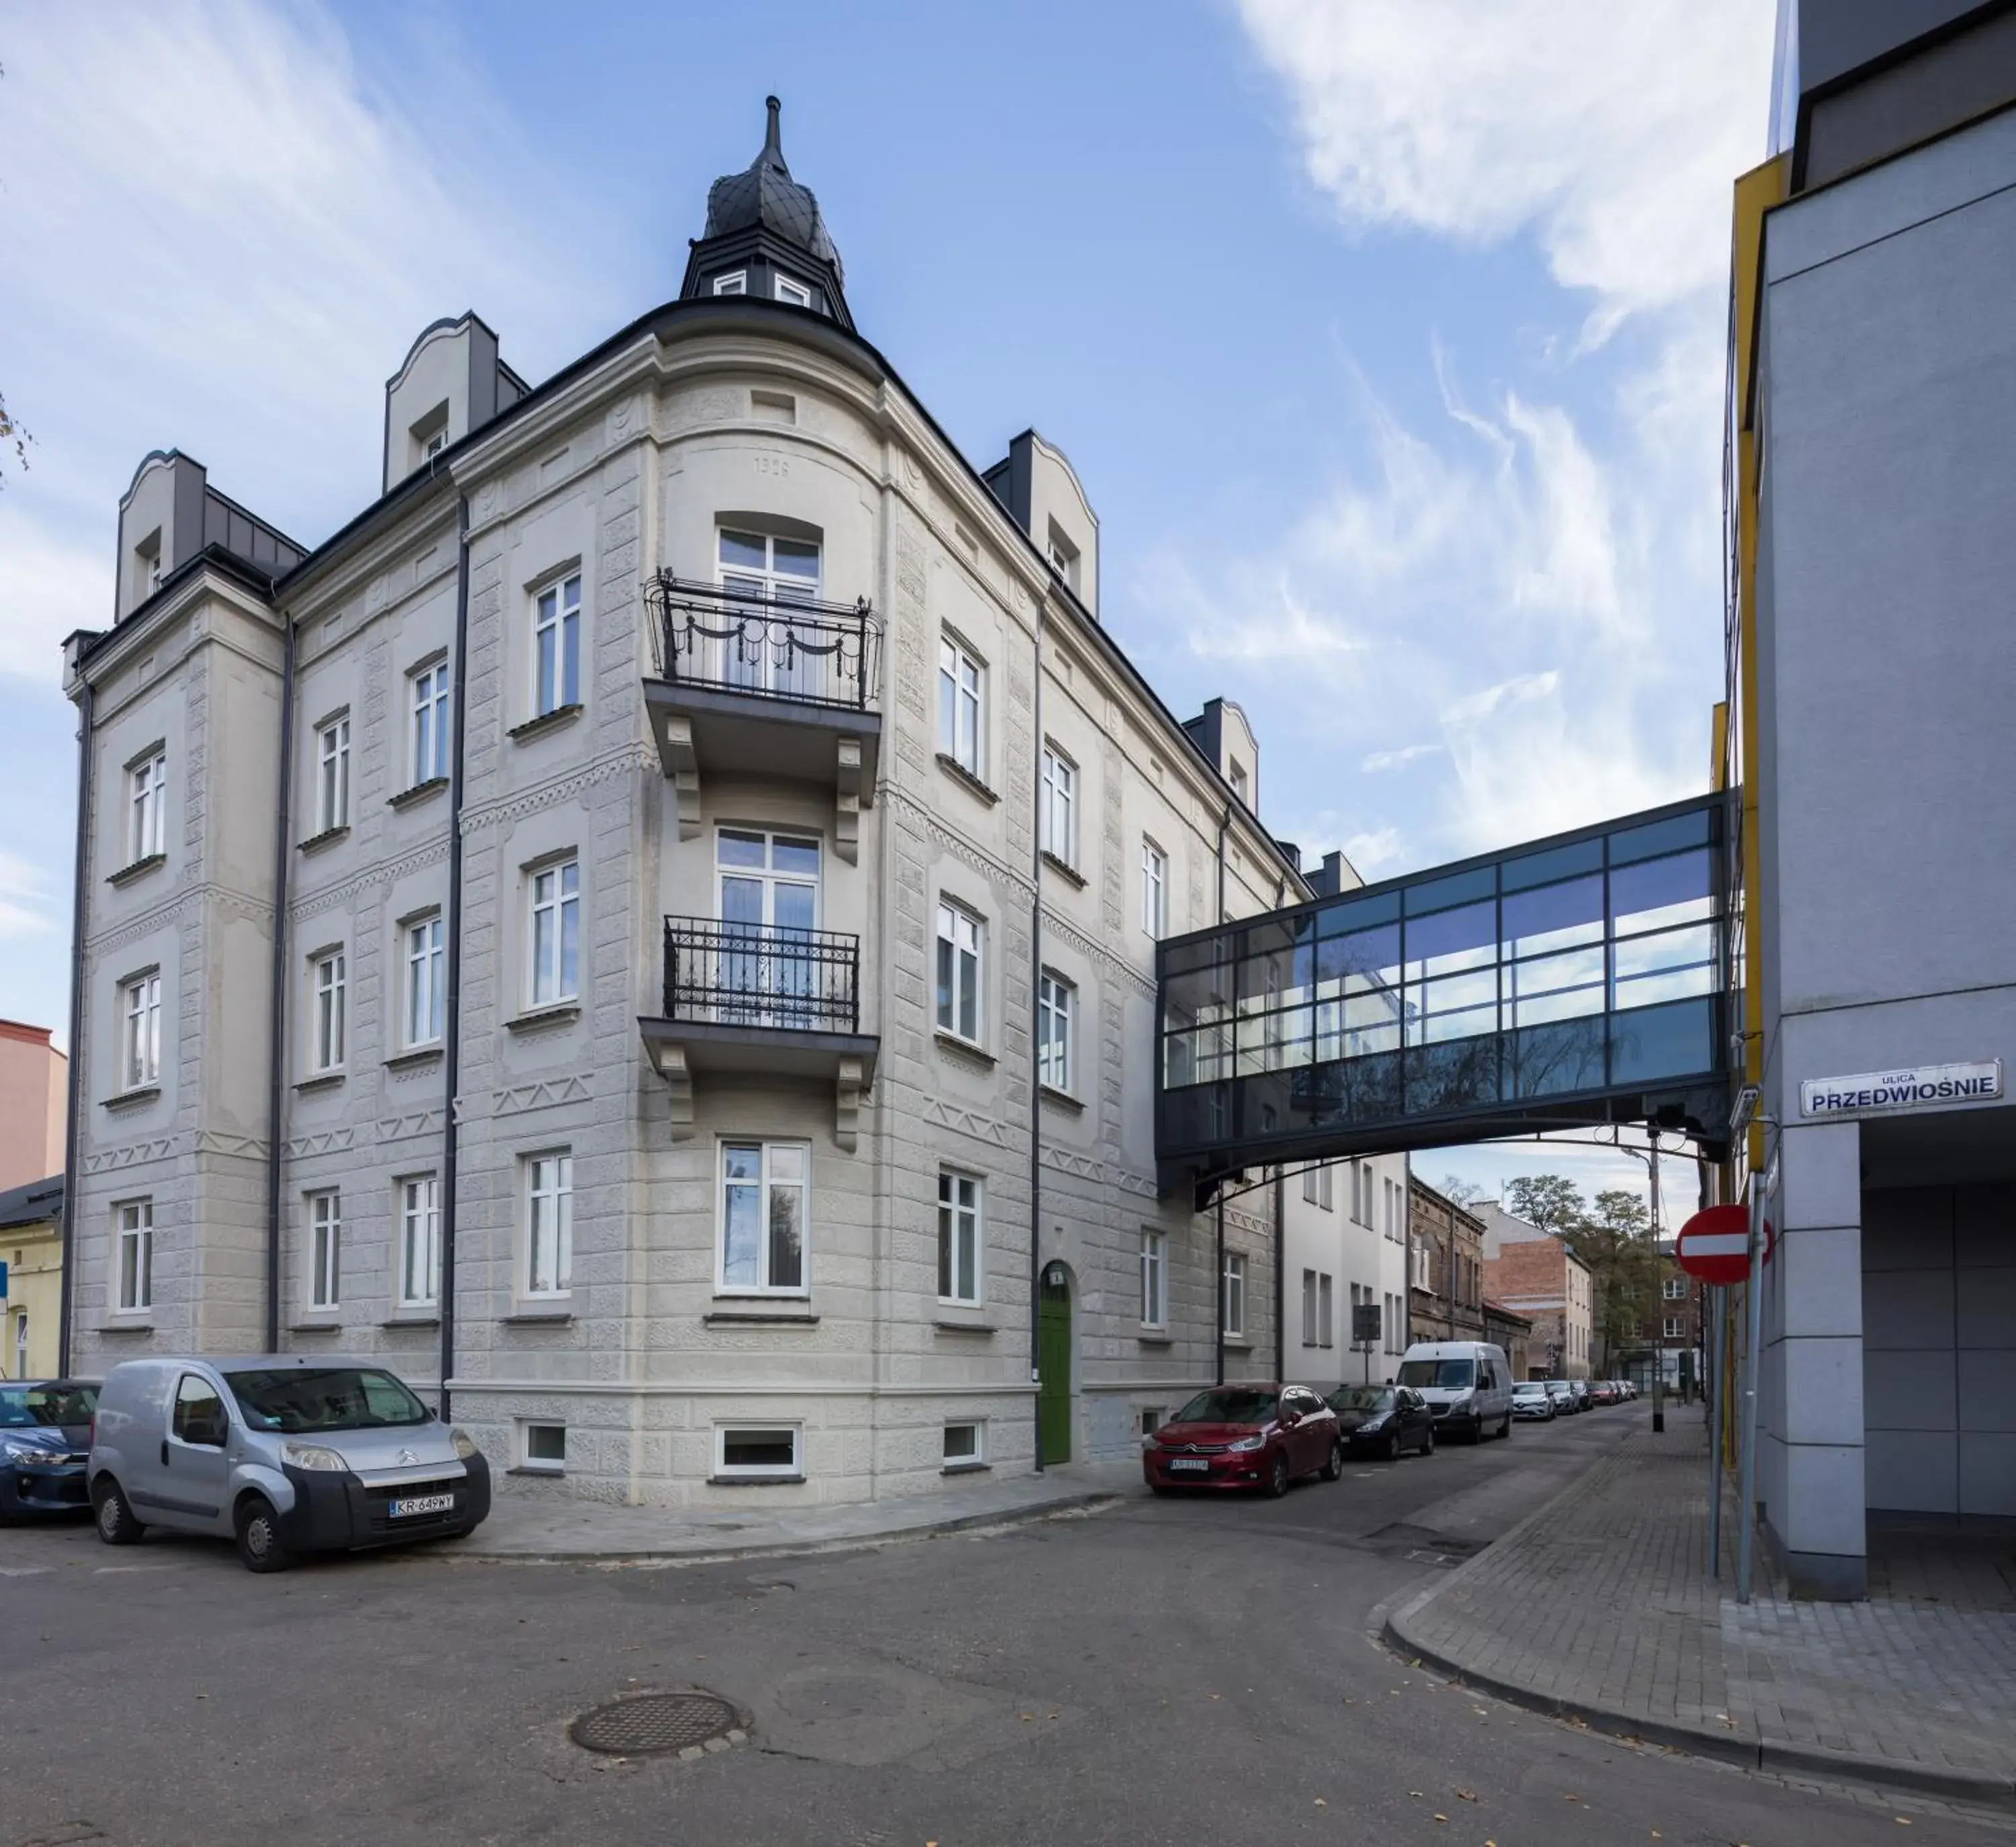 Property Building in Hotel Wilga